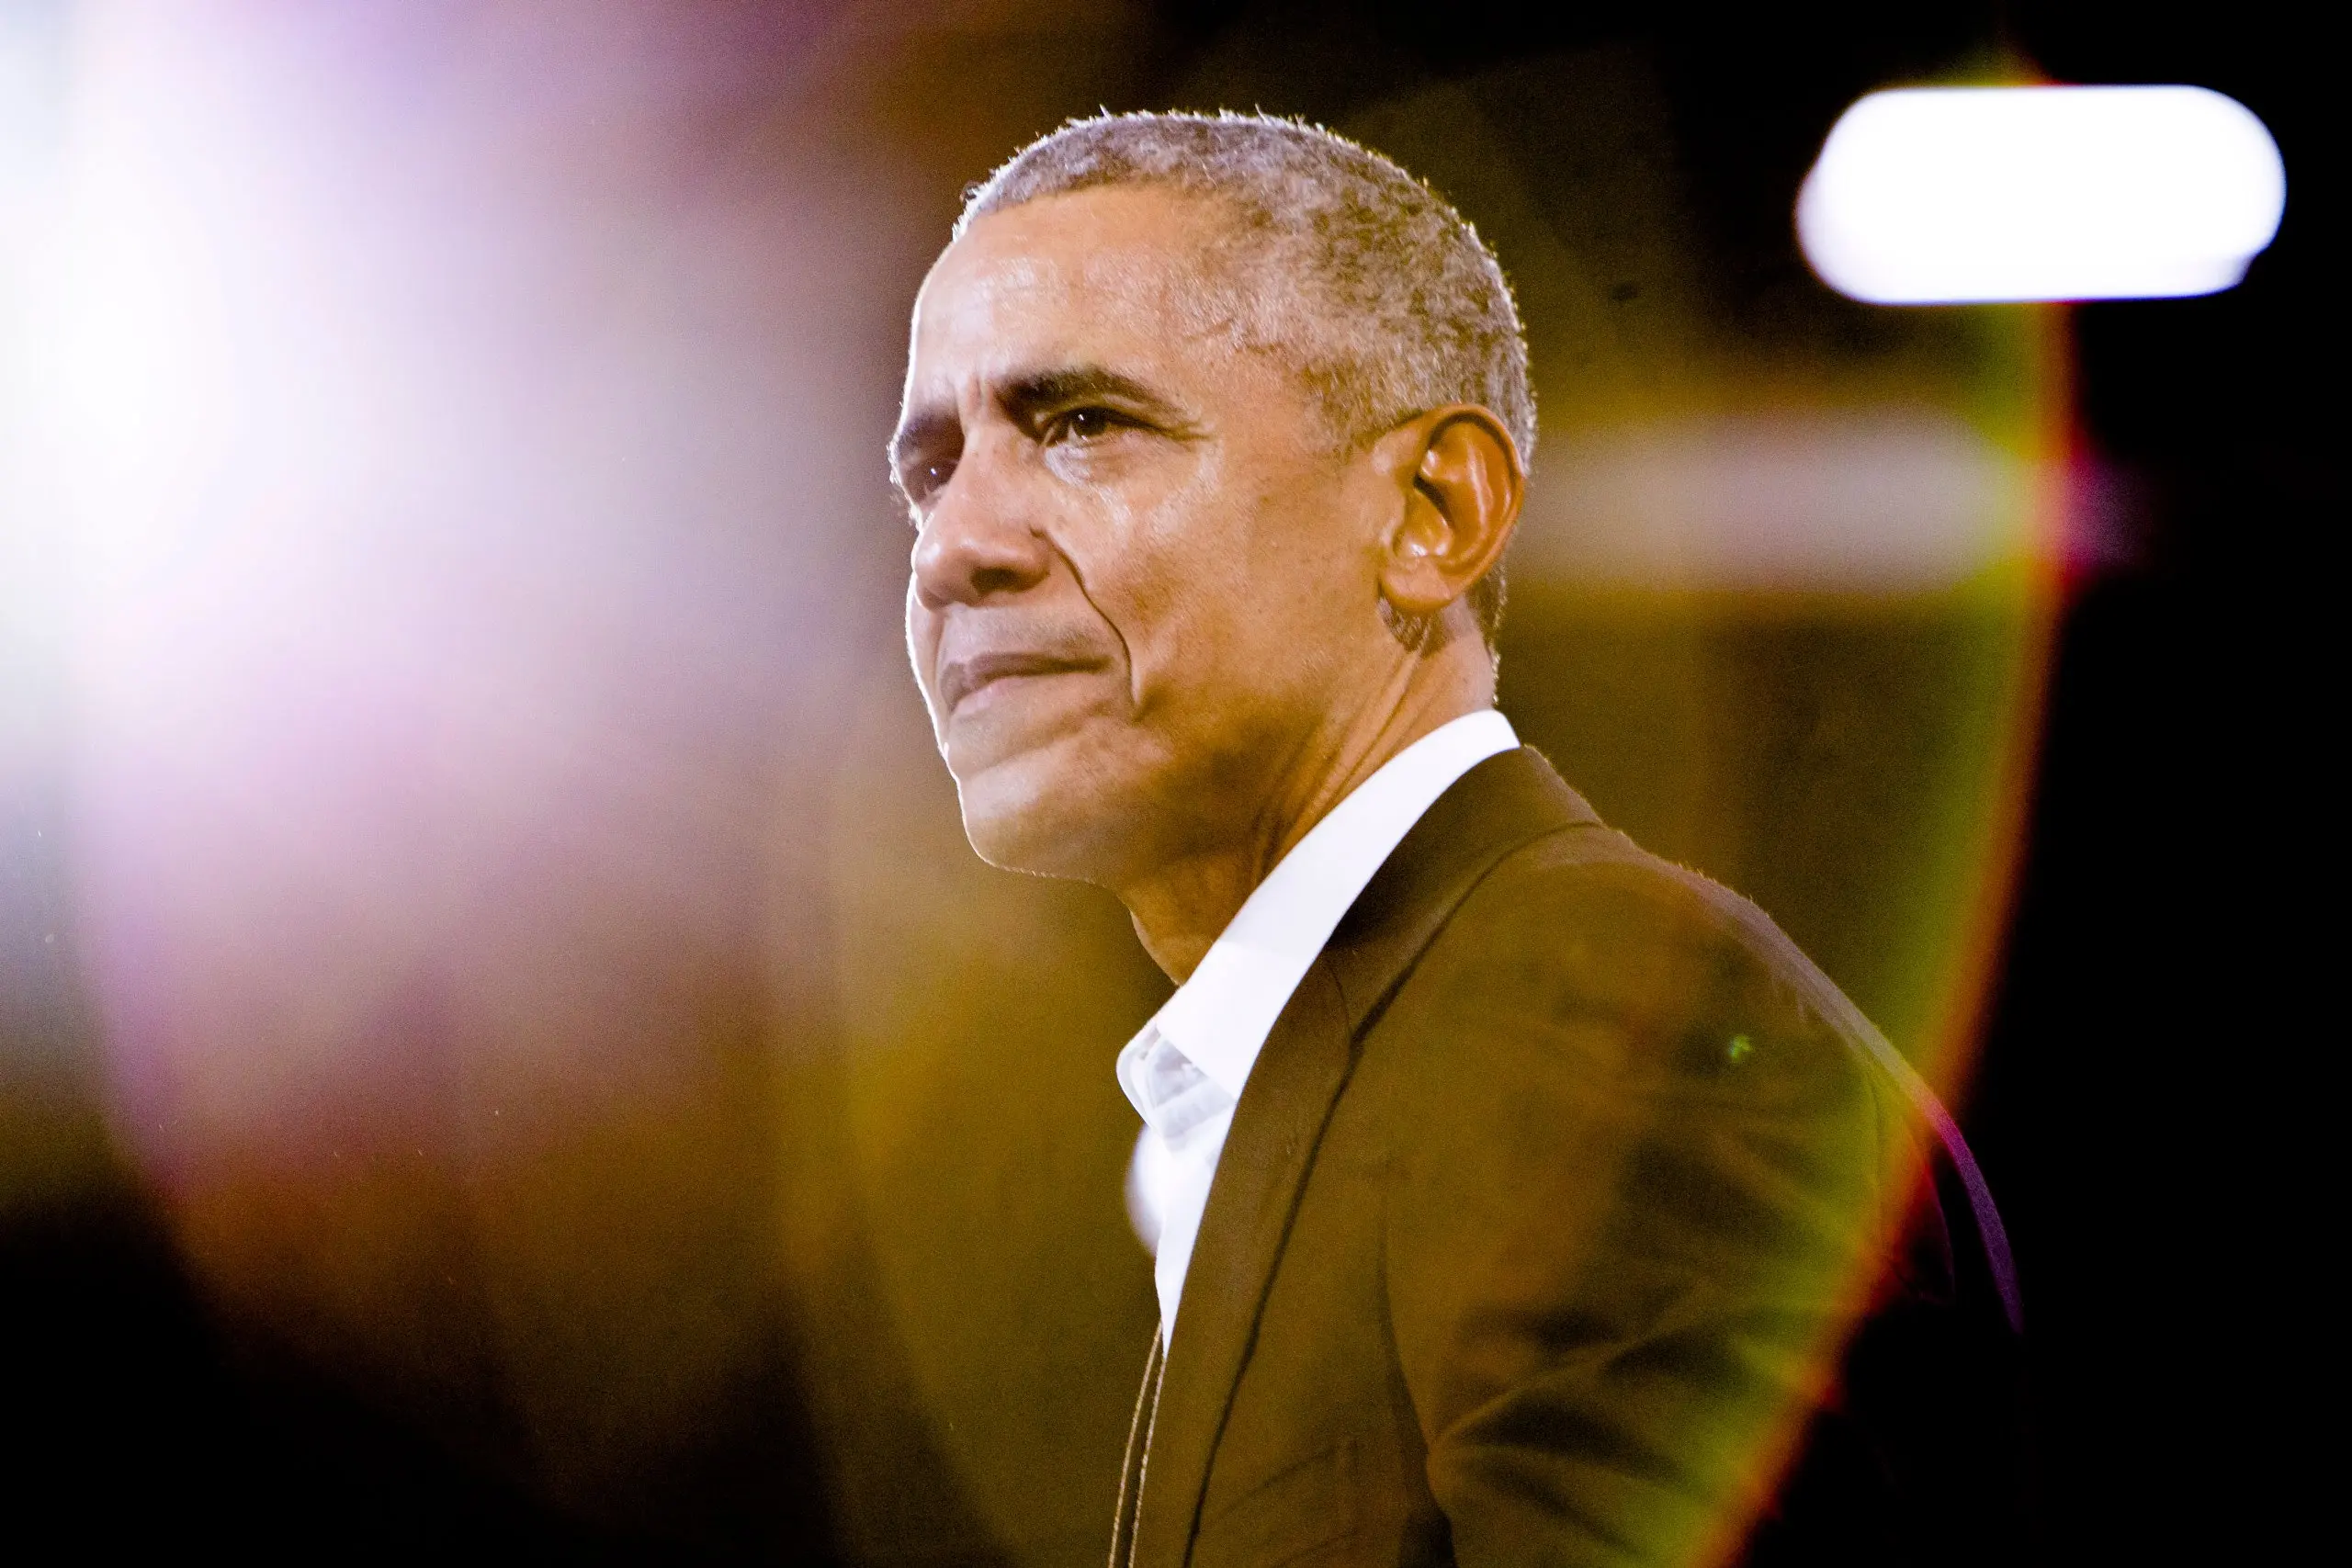 Bývalému prezidentovi USA není kinematografie cizí. Barack Obama i letos představuje filmy a seriály, které si oblíbil